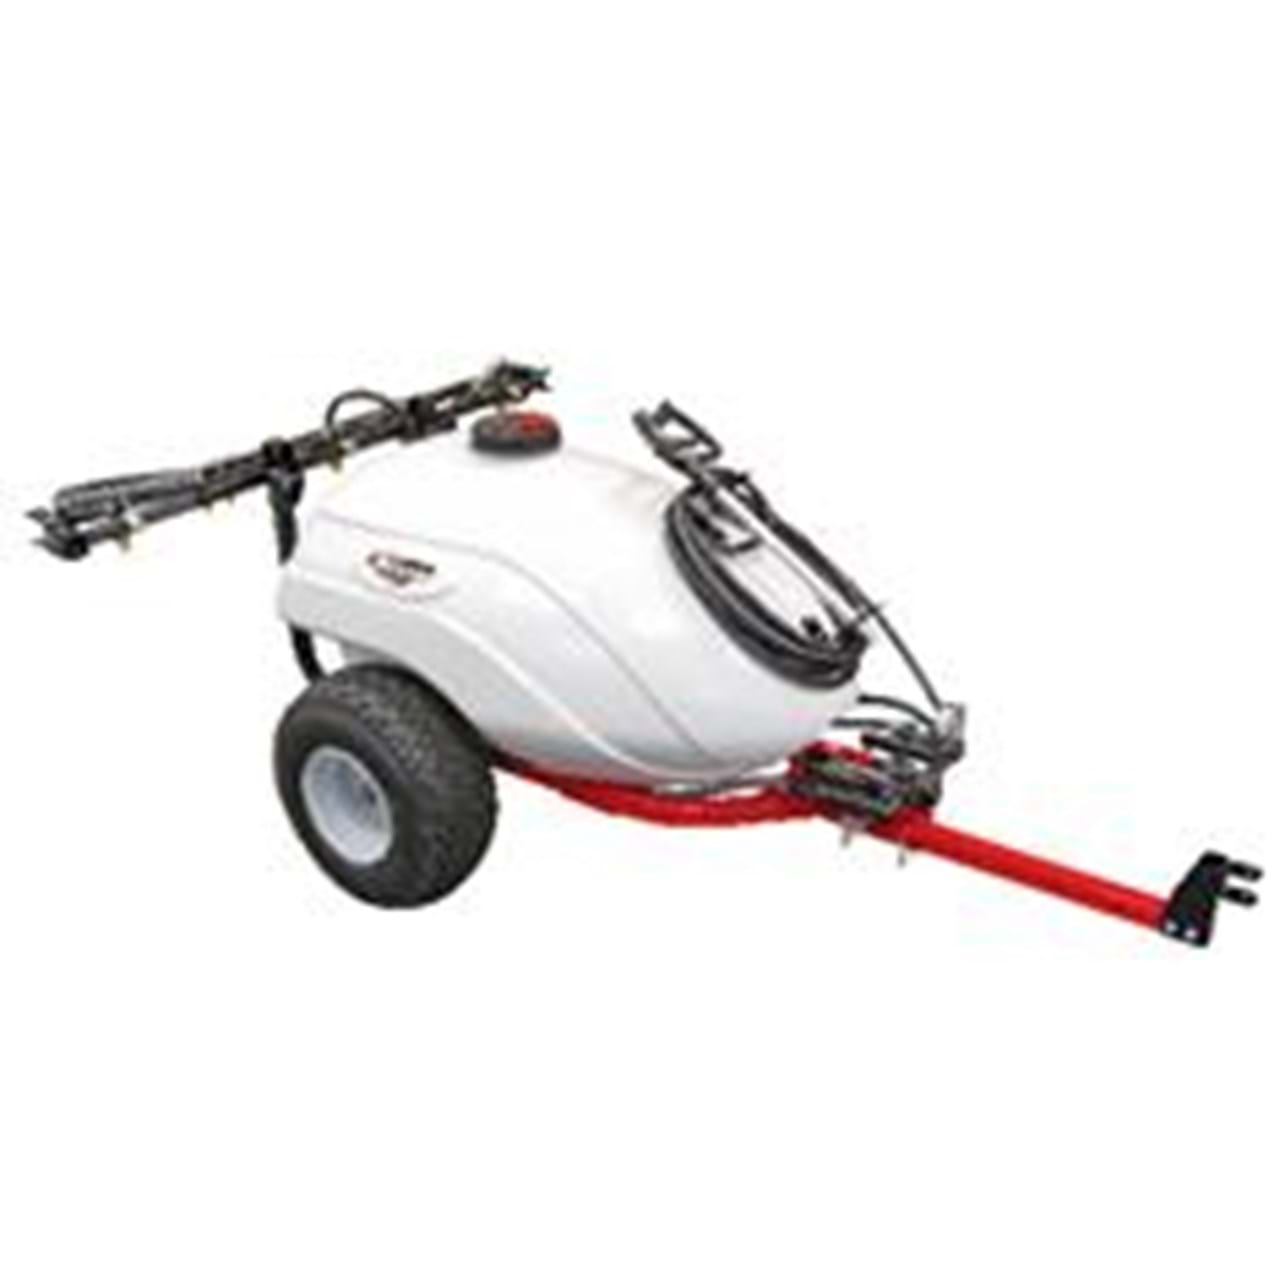  Fimco 5302320 25 GALLON ATV SPRAYER W 7 NOZZLE BOOM : Patio,  Lawn & Garden